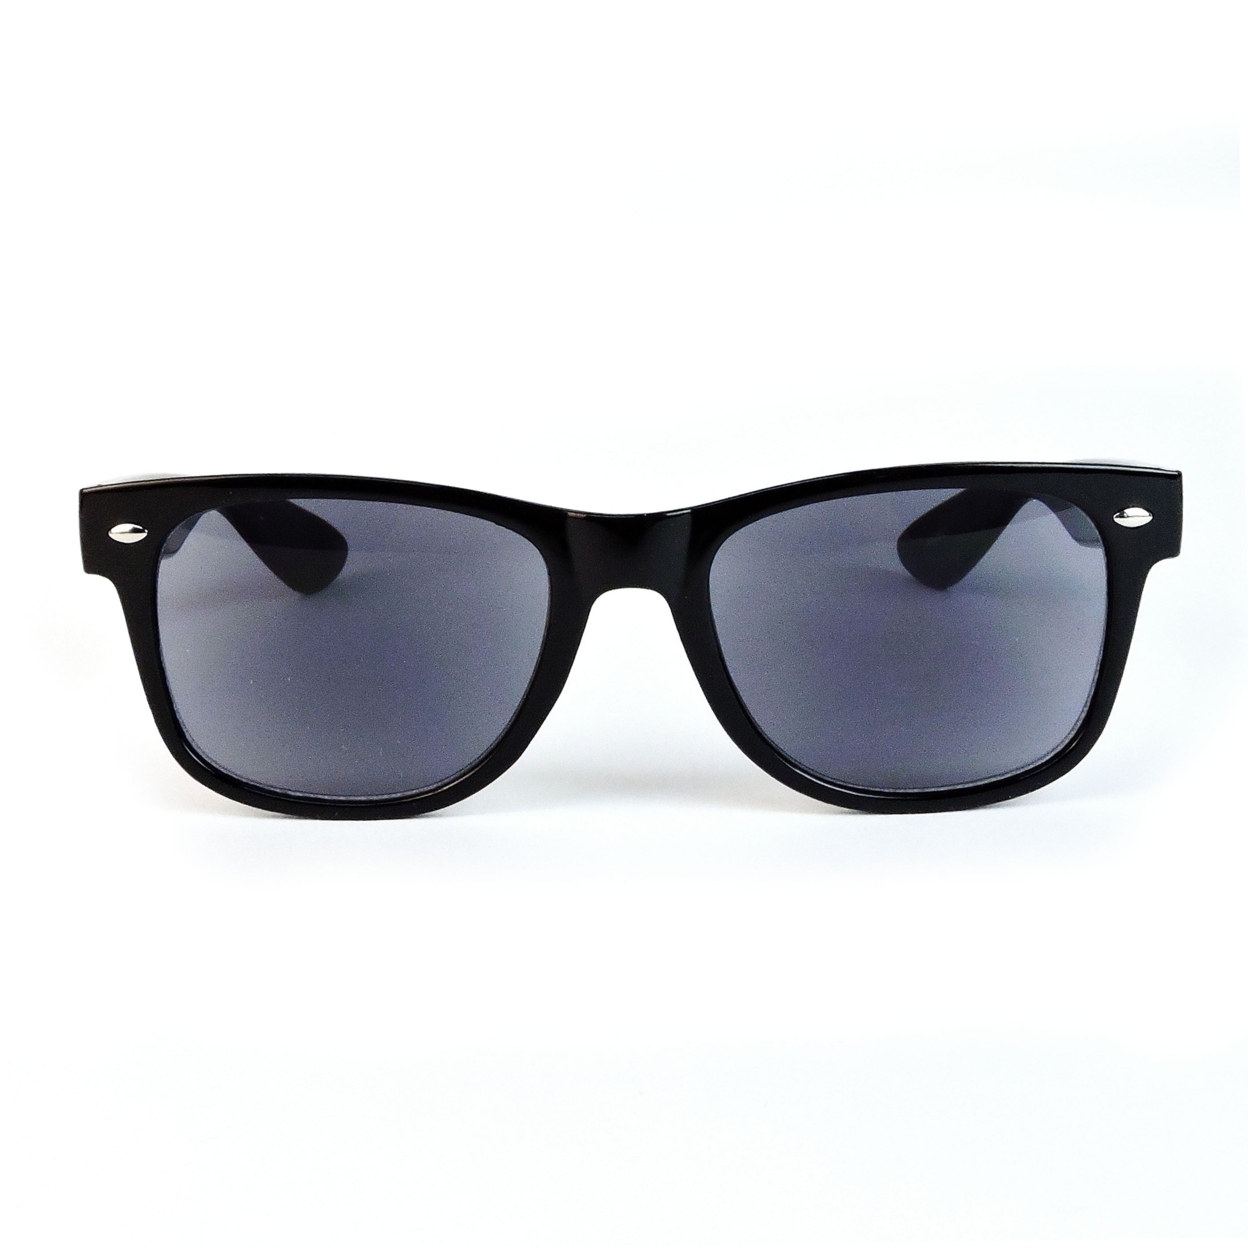 Sun Readers Full Lens Classic Frame 80's Retro Style Reading Sunglasses - Black, +2.25